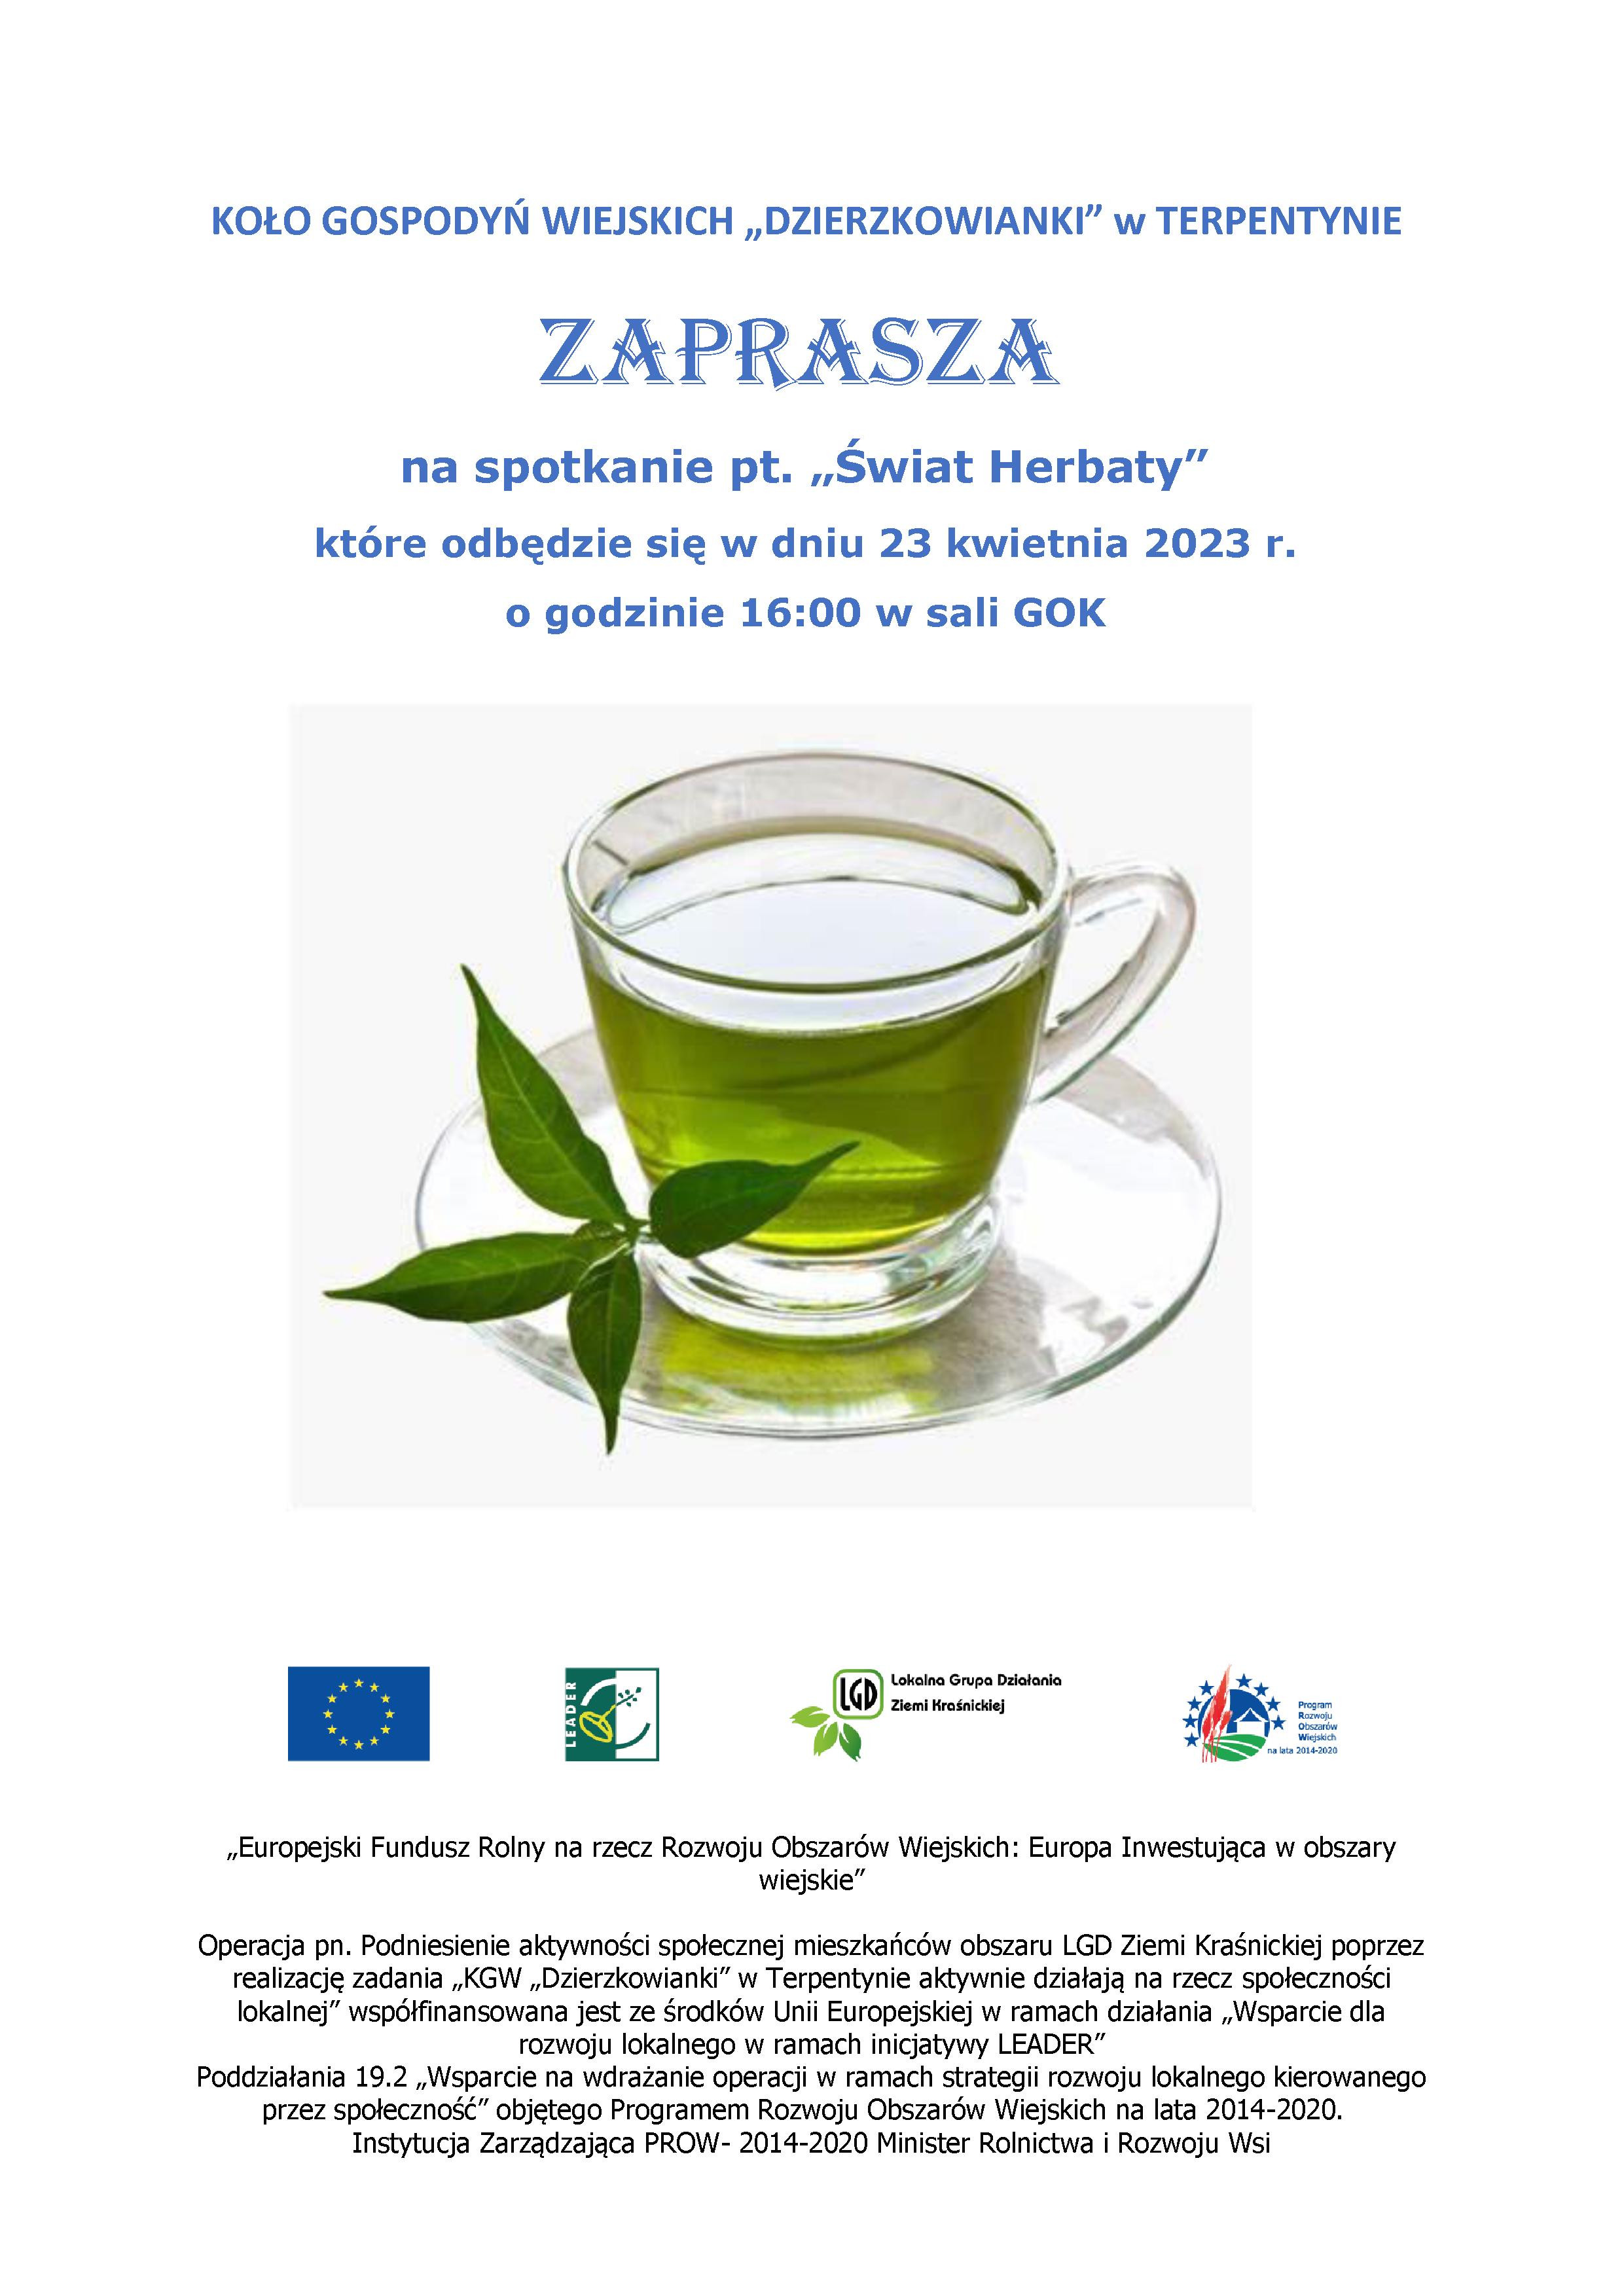 KGW "Dzierzkowianki" w Terpentynie zaprasza na spotkanie " Świat herbaty"